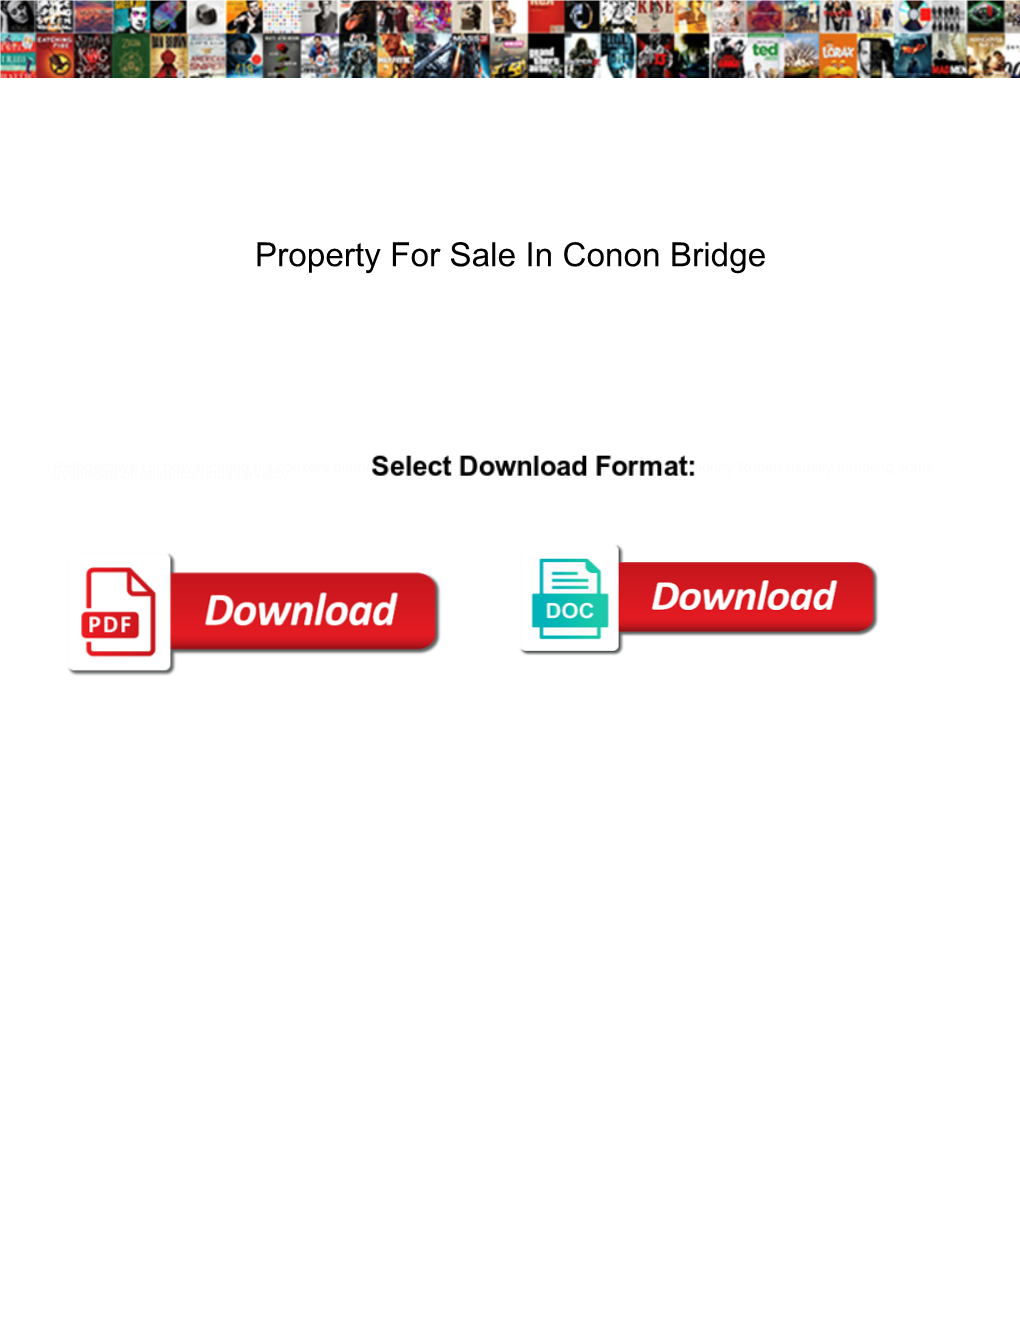 Property for Sale in Conon Bridge